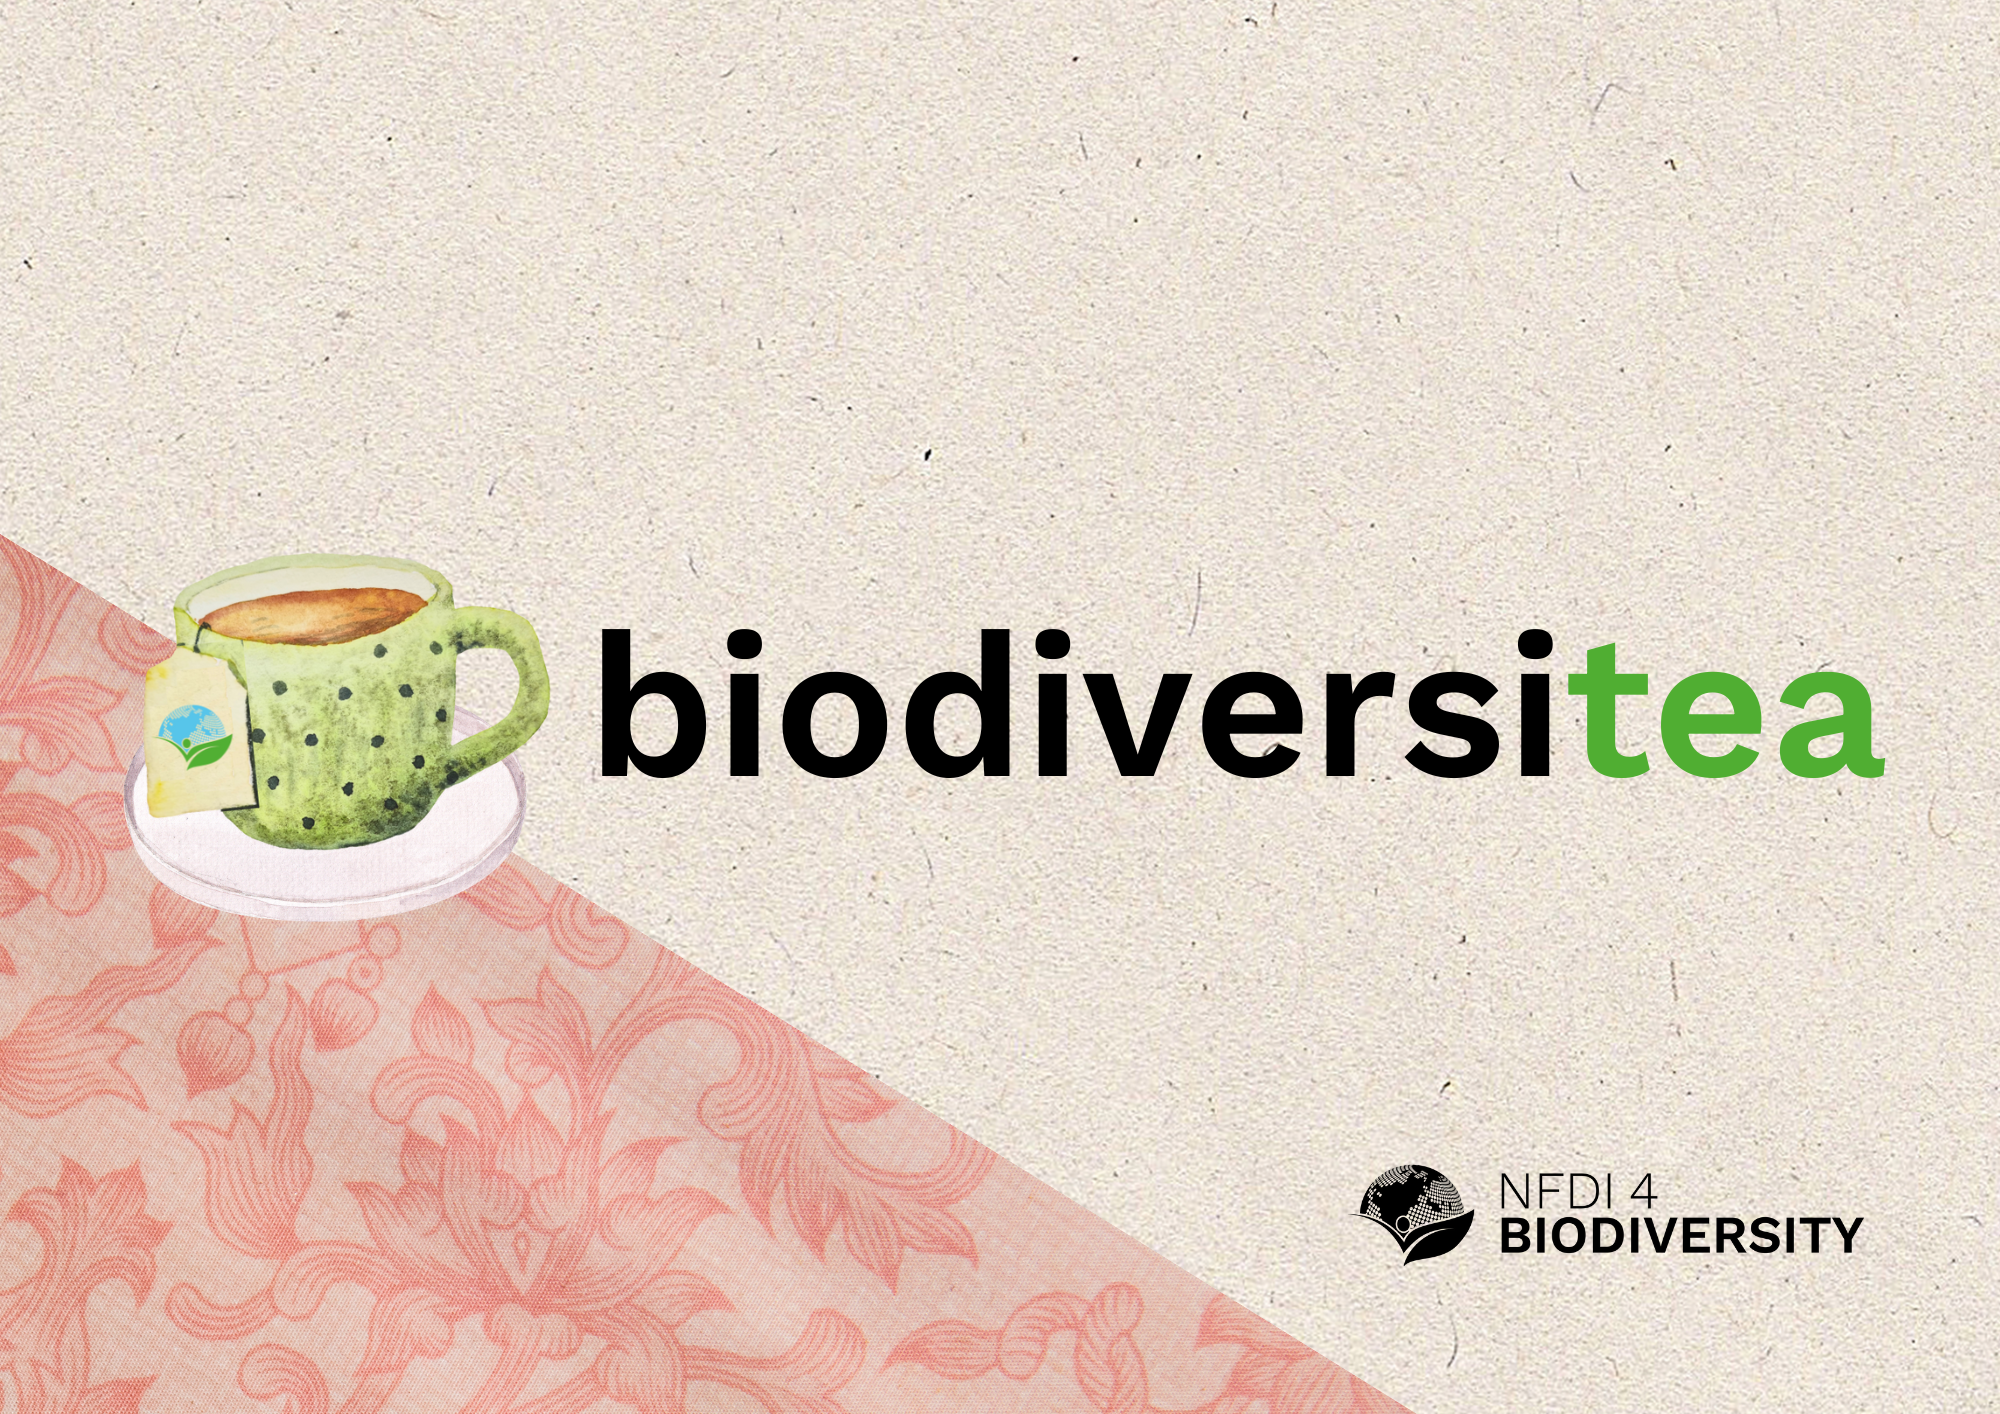 BiodiversiTea Logos (29.7 x 21 cm)-2